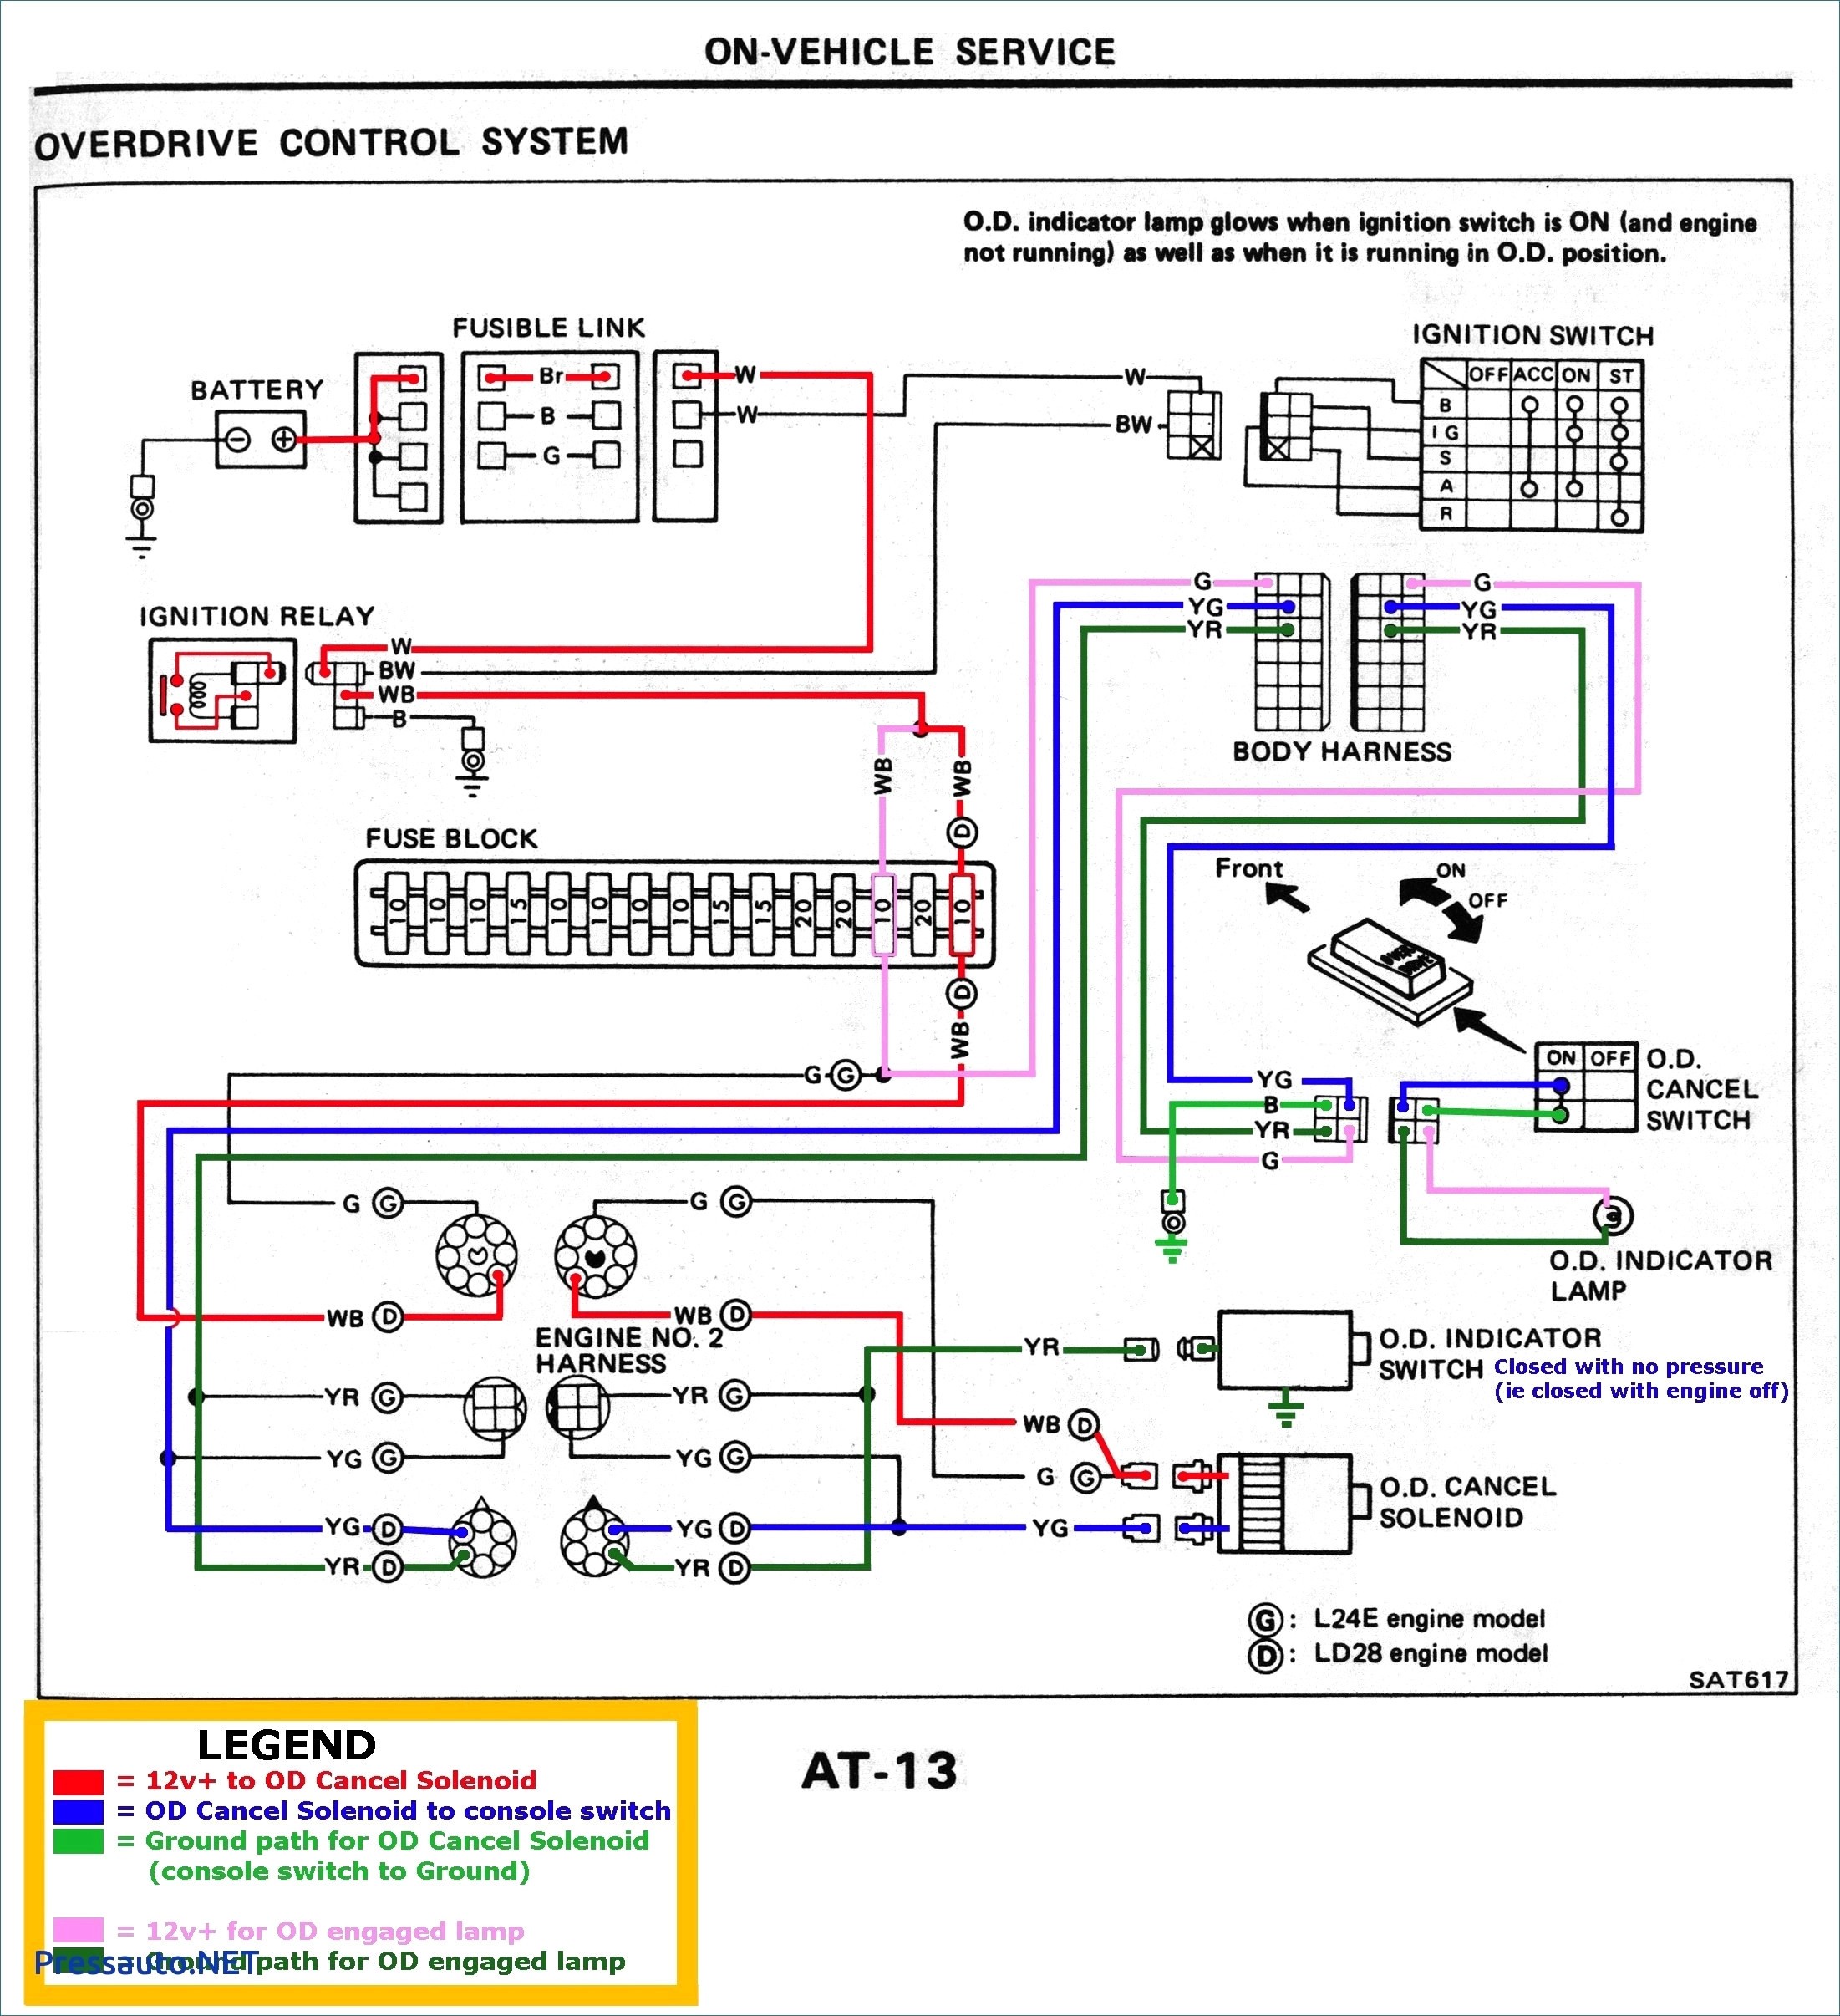 20 Hp Kohler Engine Diagram Kohler Voltage Regulator Wiring Diagram Shahsramblings Of 20 Hp Kohler Engine Diagram